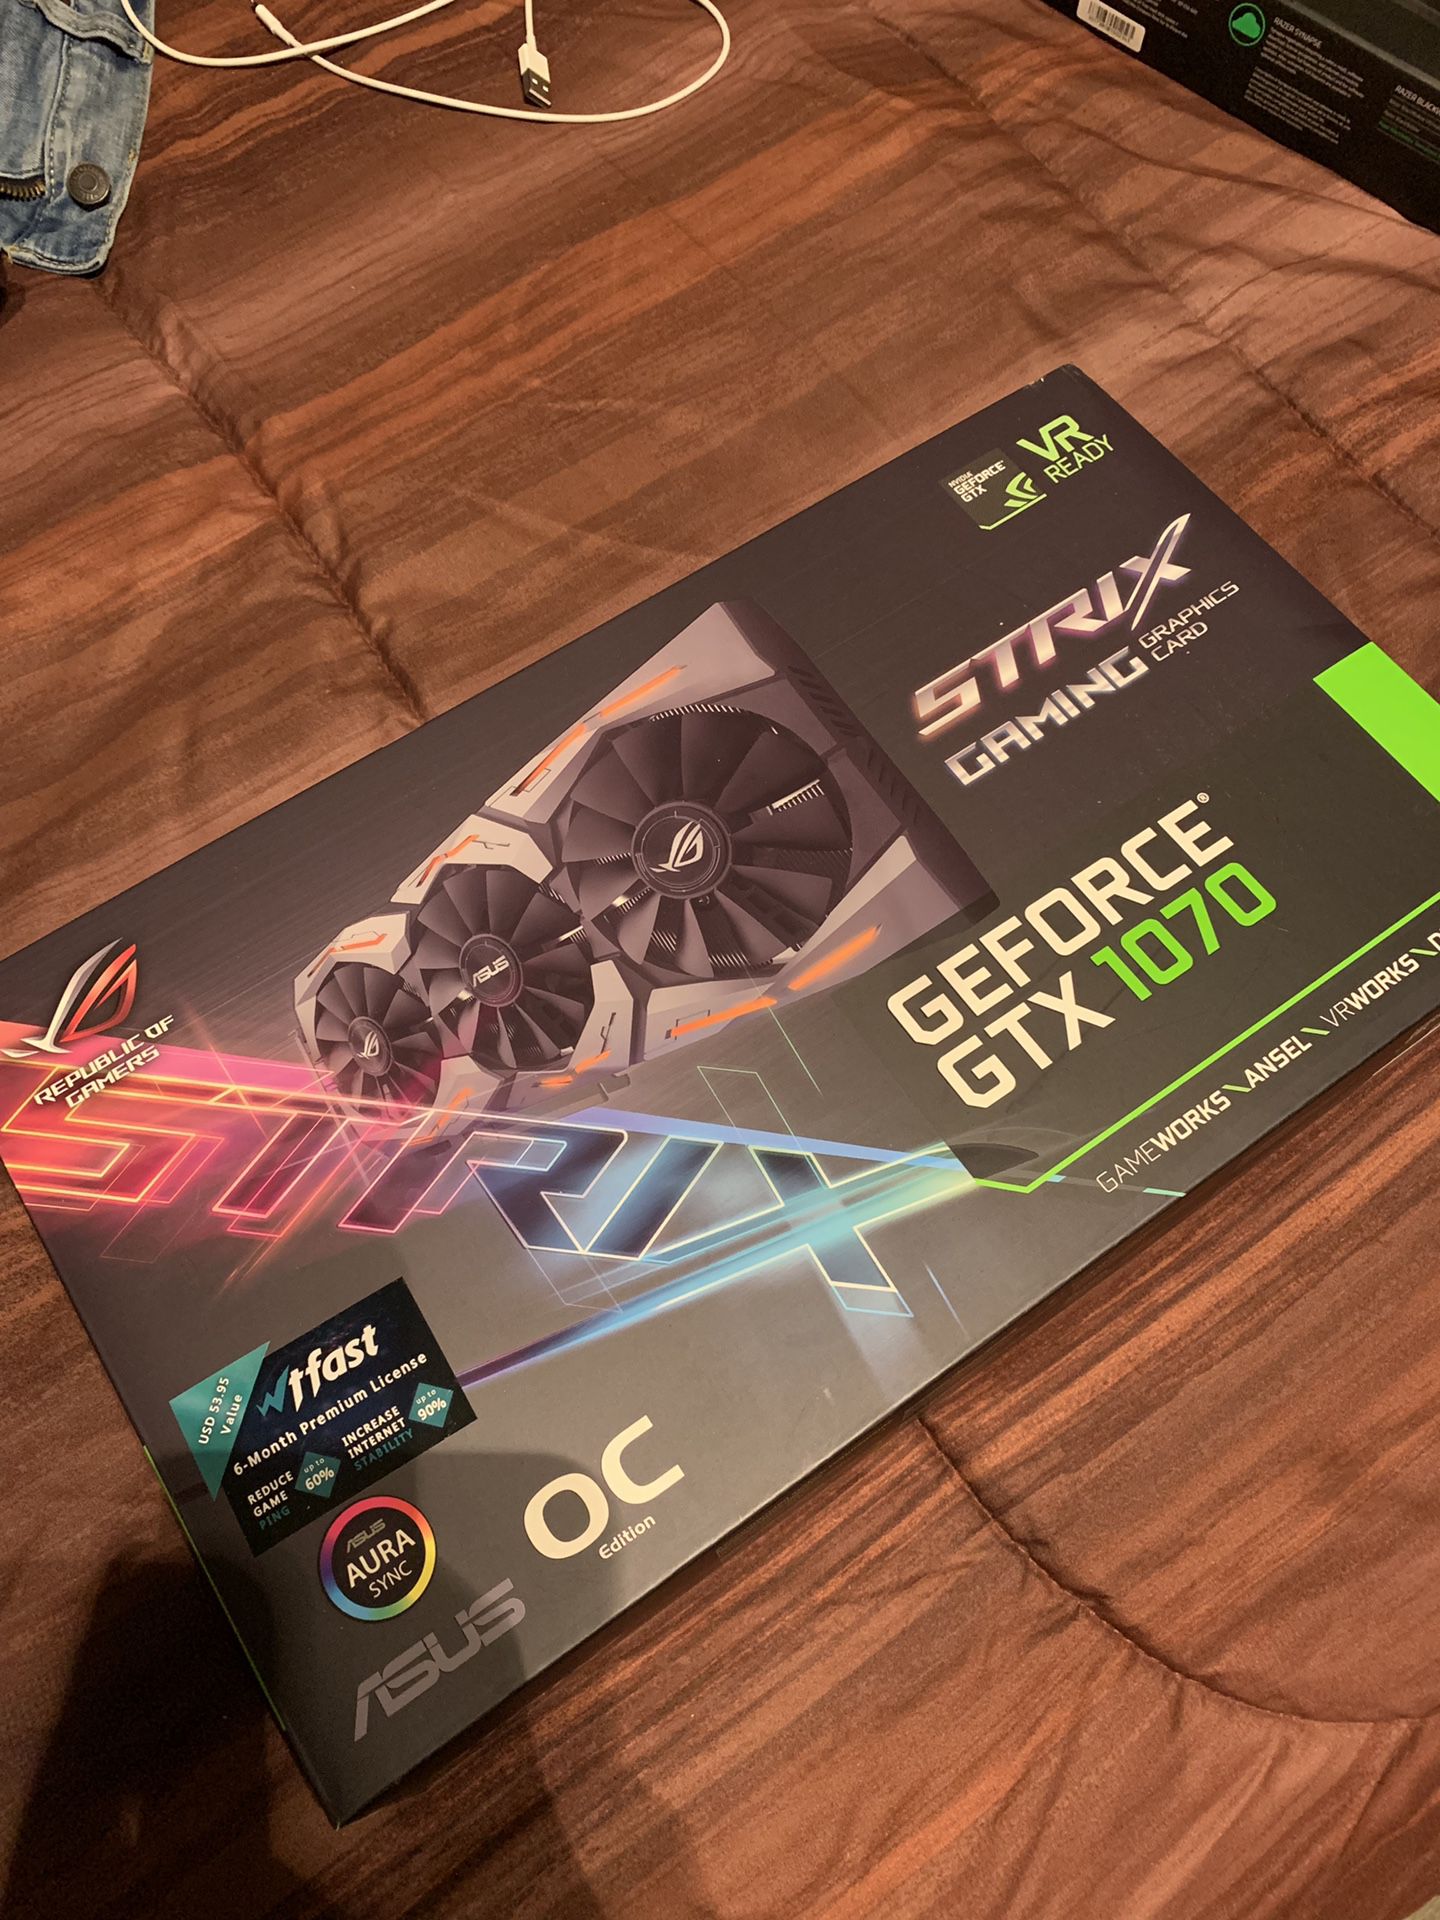 GeForce GTX 1070 Strix edition 8gb